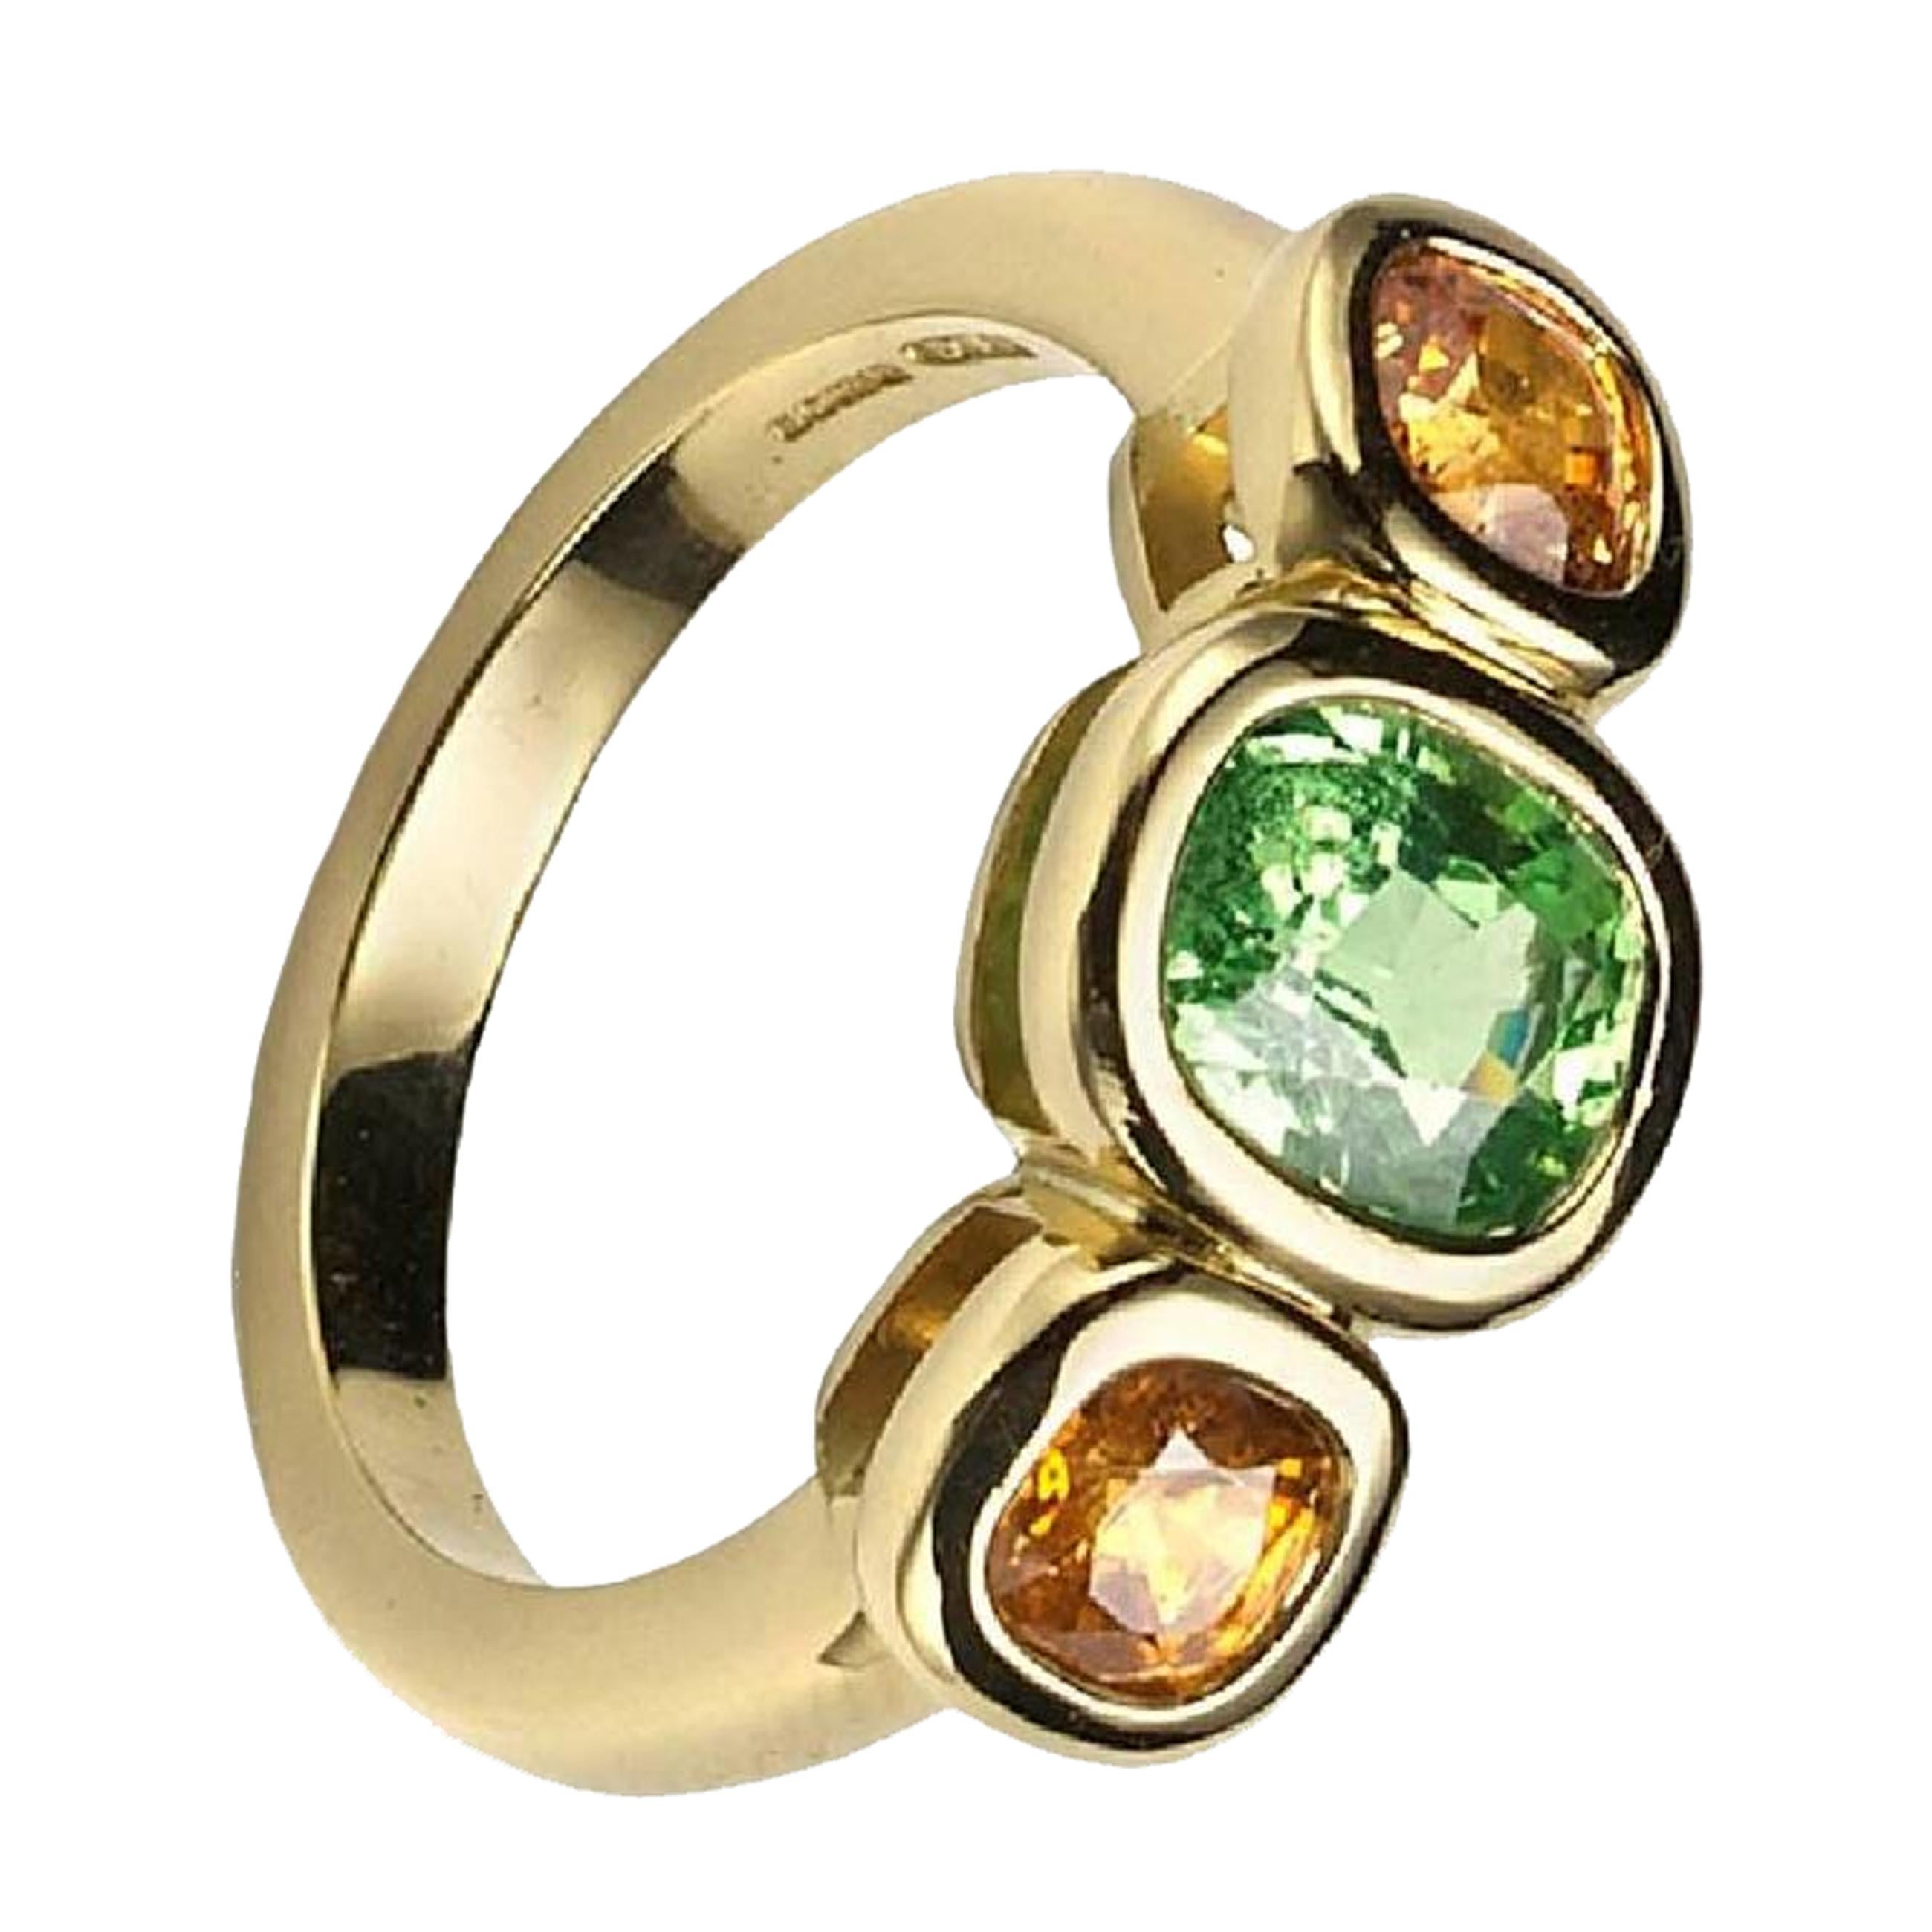 Ring aus 18-karätigem Gelbgold mit drei Steinen, besetzt mit einem Tsavorit und zwei Mandarin-Granaten.
Ringgröße:  M
Steine:  tsavorit 7,04 x 5,3 mm, Granate 4,27 mm Durchmesser